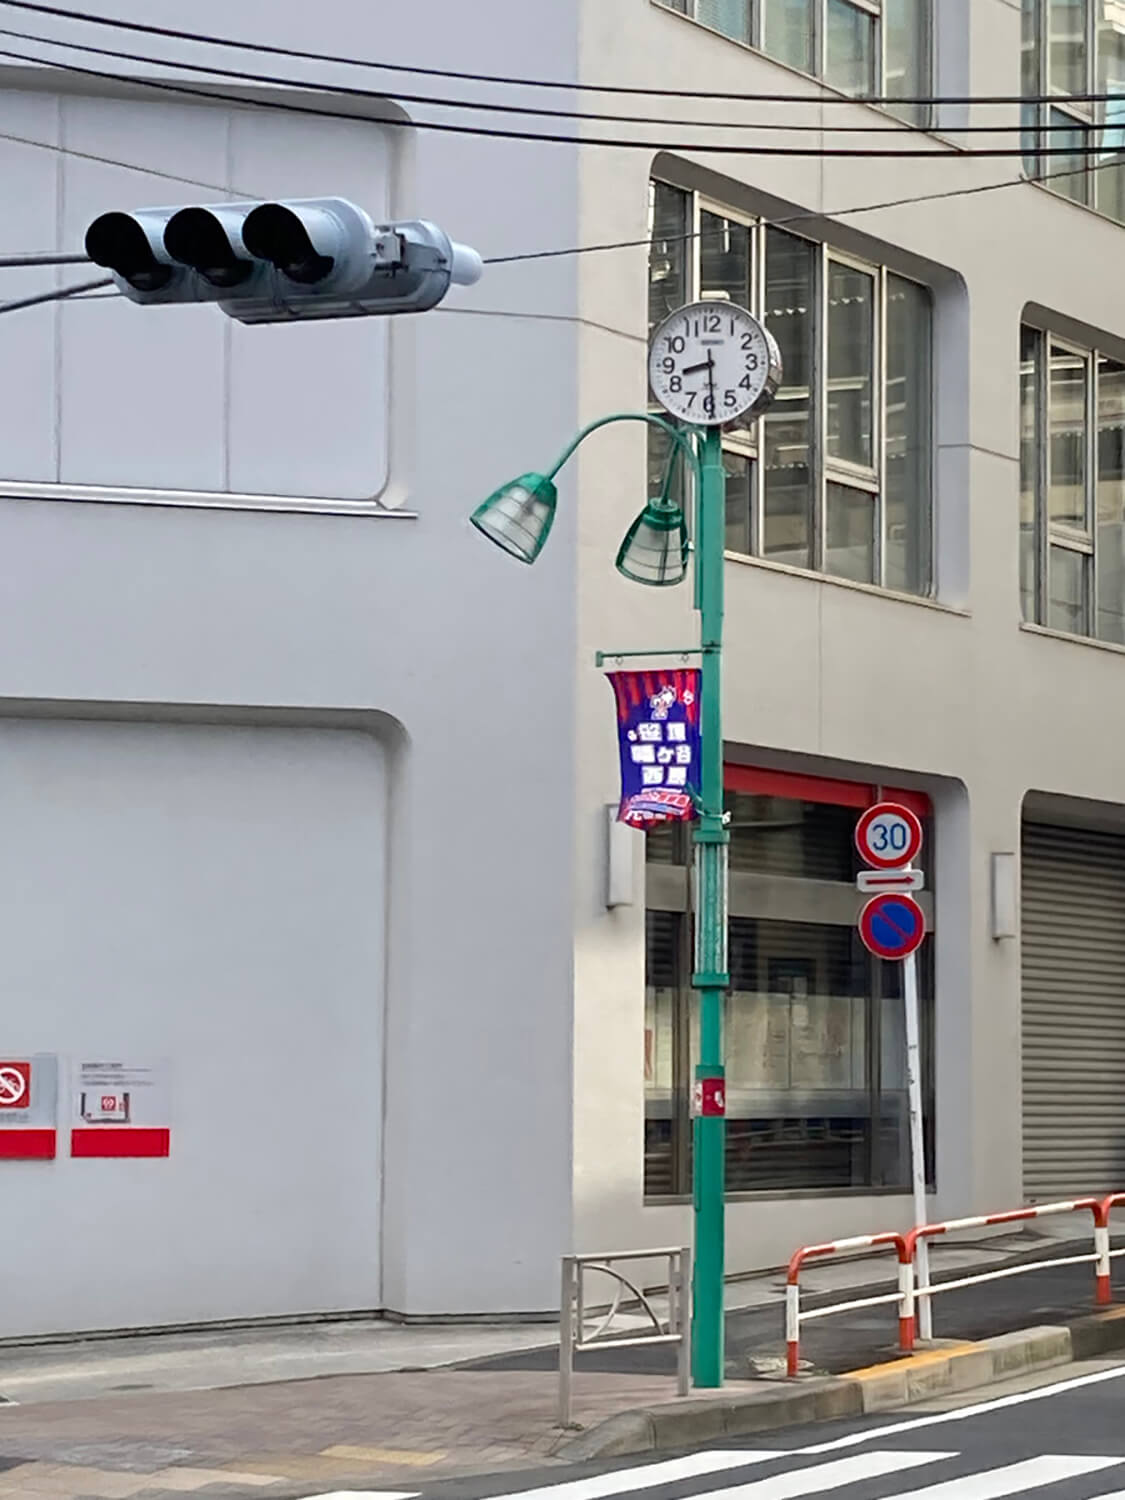 笹塚駅入り口の時計。これも対向車線側にあるので、信号待ちの際に確認する。